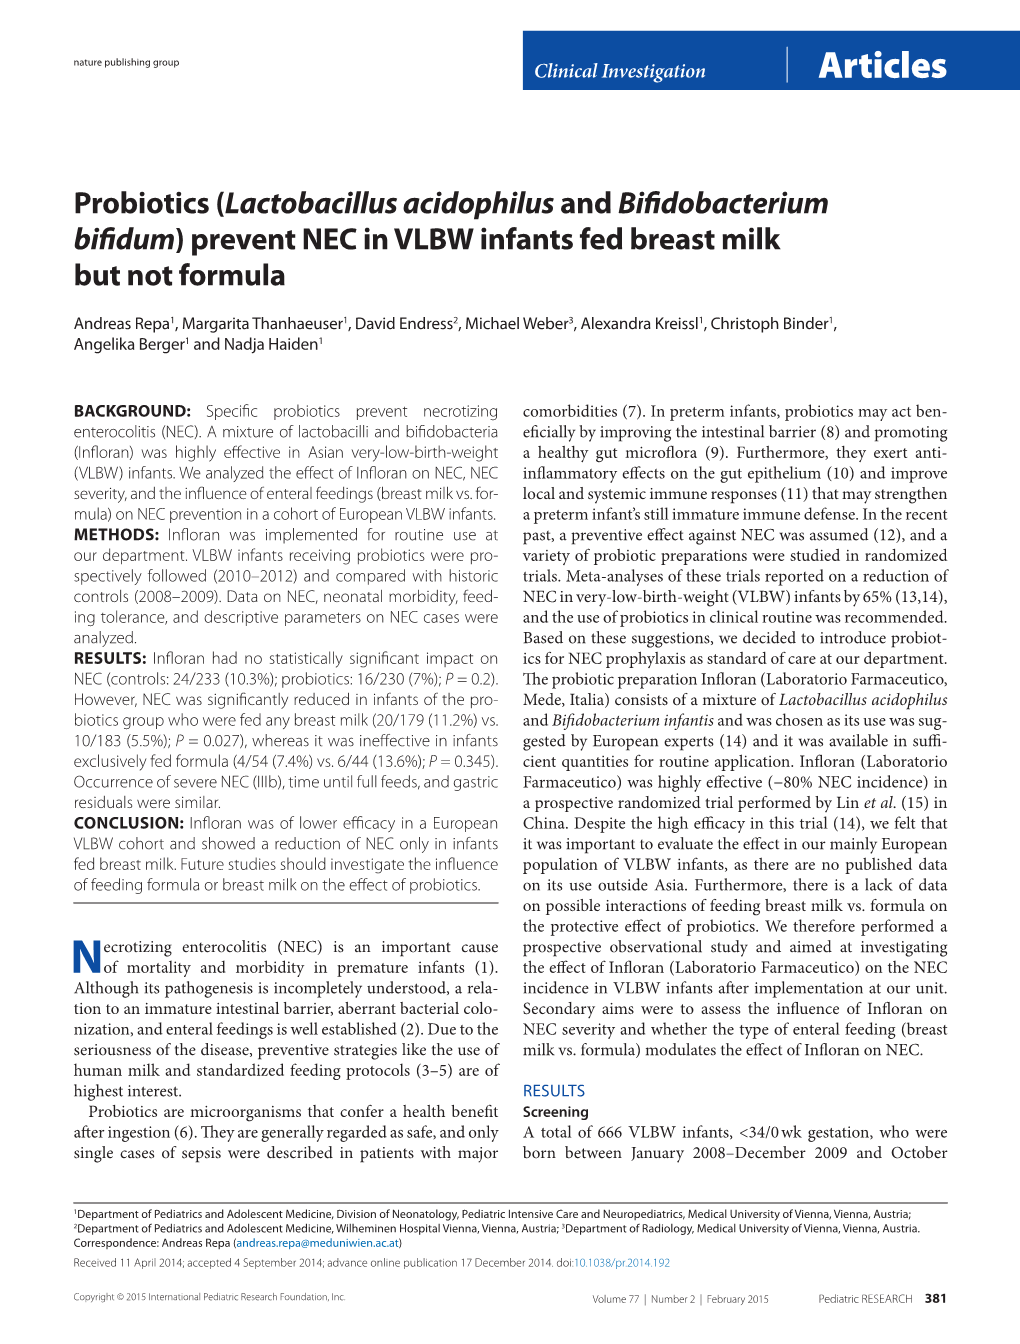 Probiotics (Lactobacillus Acidophilus and Bifidobacterium Bifidum) Prevent NEC in VLBW Infants Fed Breast Milk but Not Formula